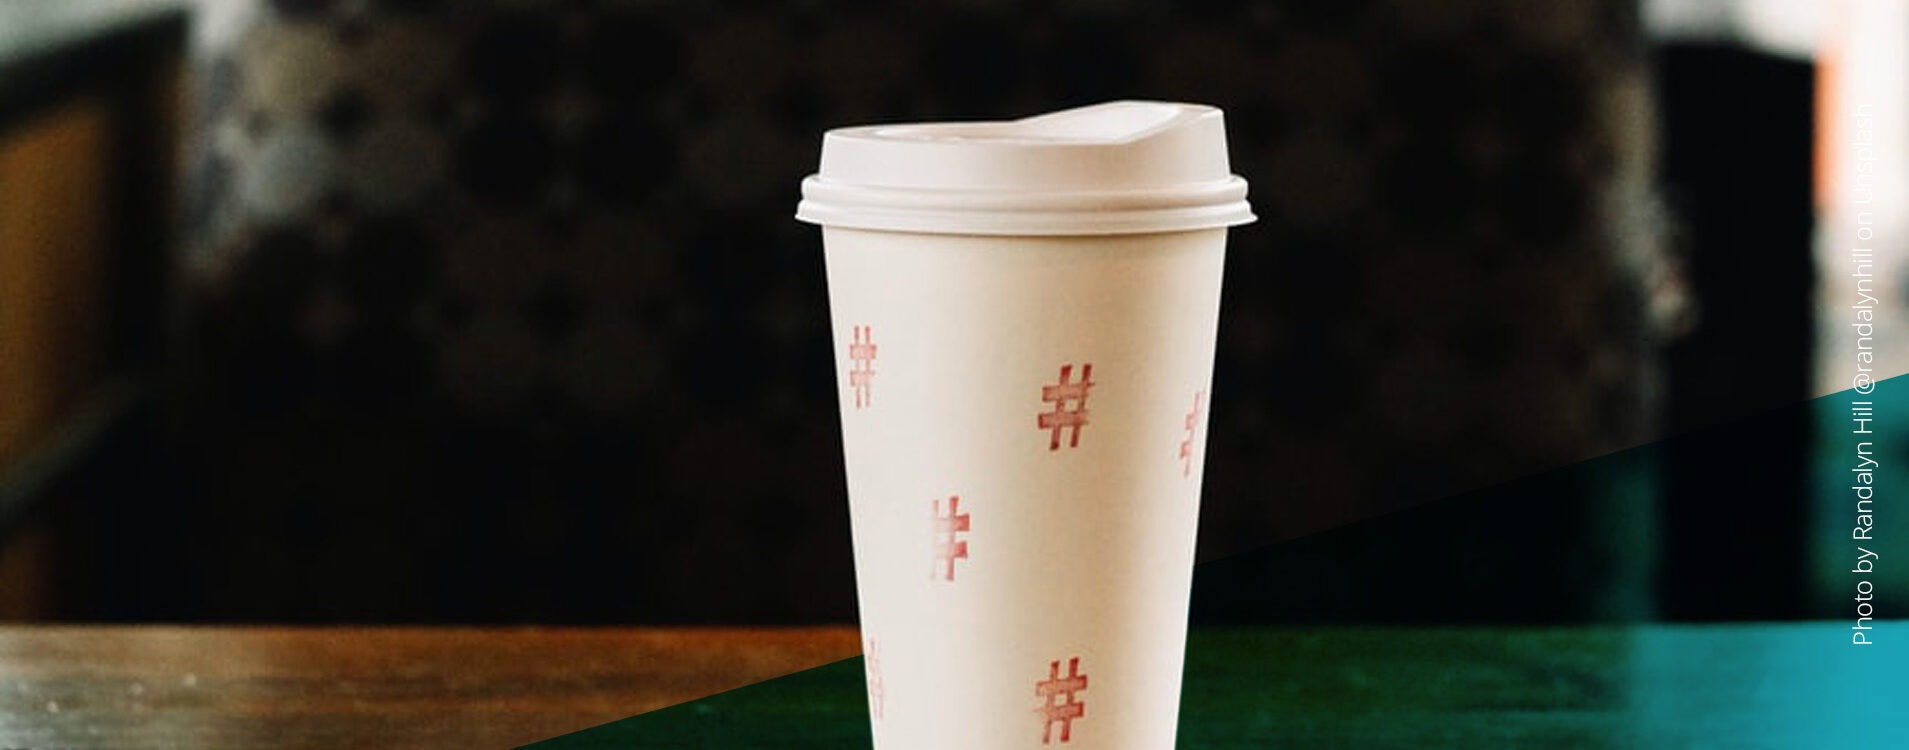 Weißer Kaffee To-Go-Becher mit aufgemalten Hashtags